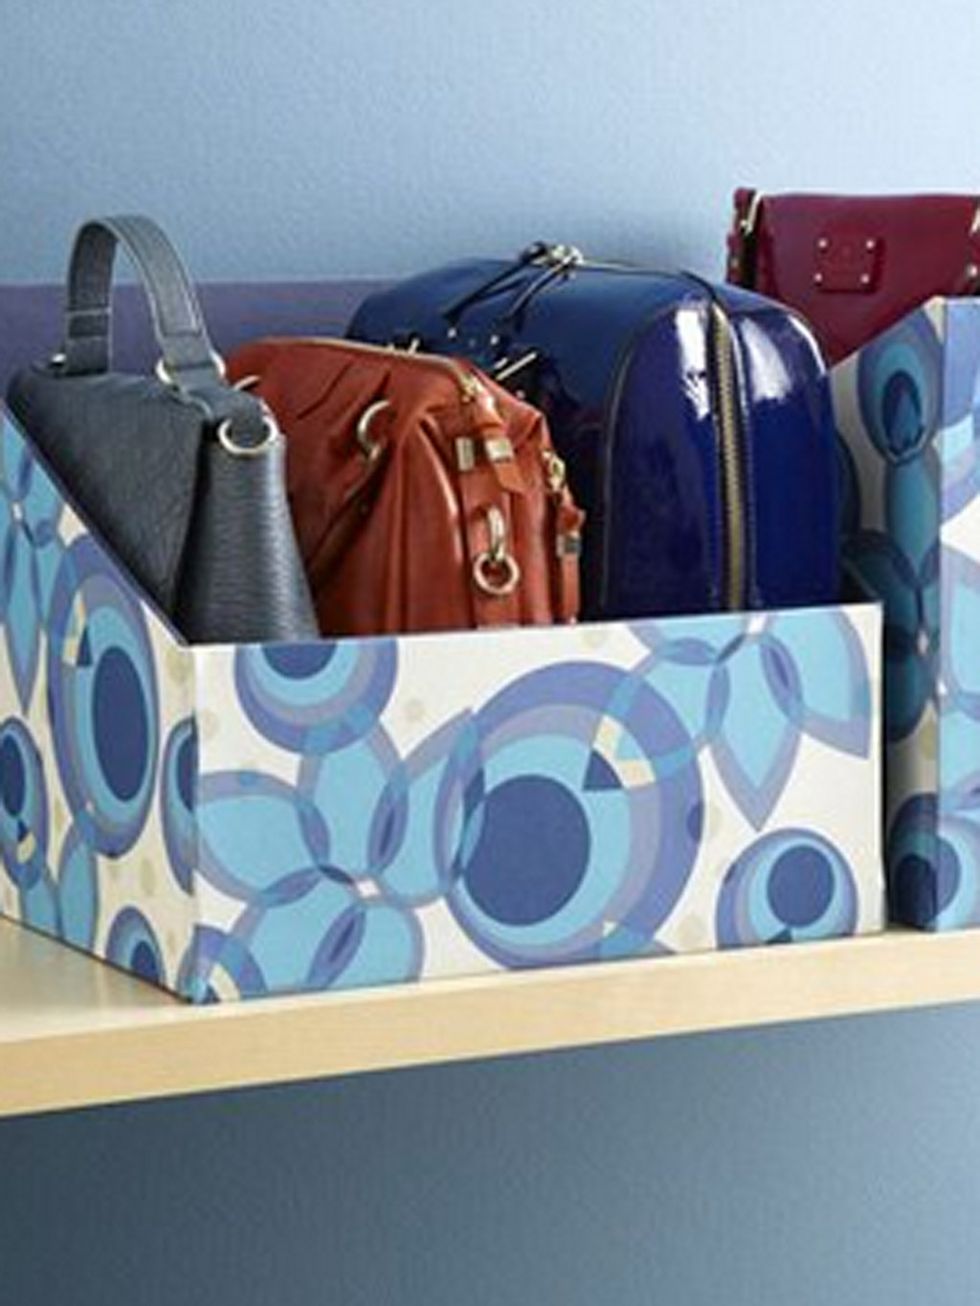 Cómo organizar tus bolsos en poco espacio y de forma fácil: 15